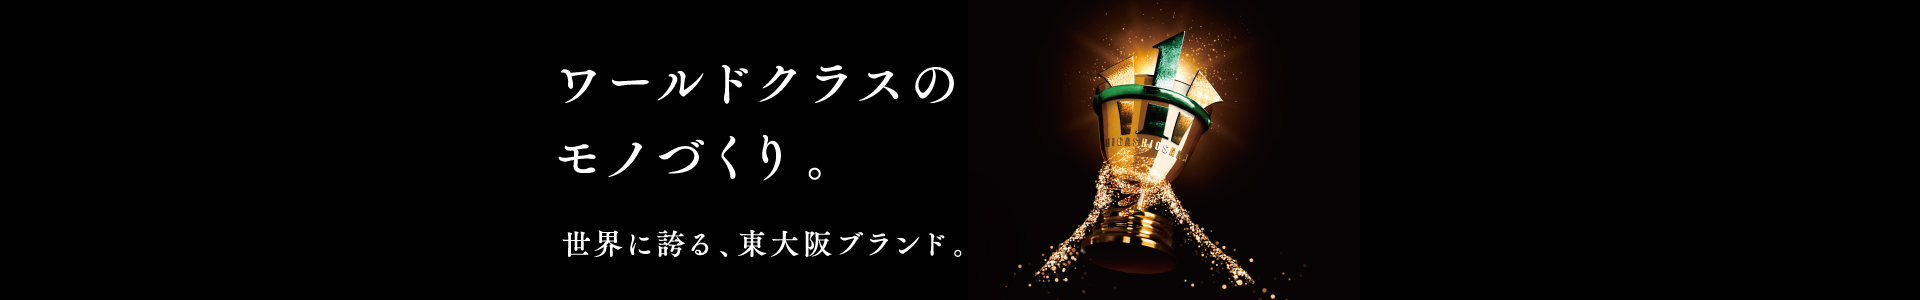 ワールドクラスのモノづくり 世界に誇る、東大阪ブランド。